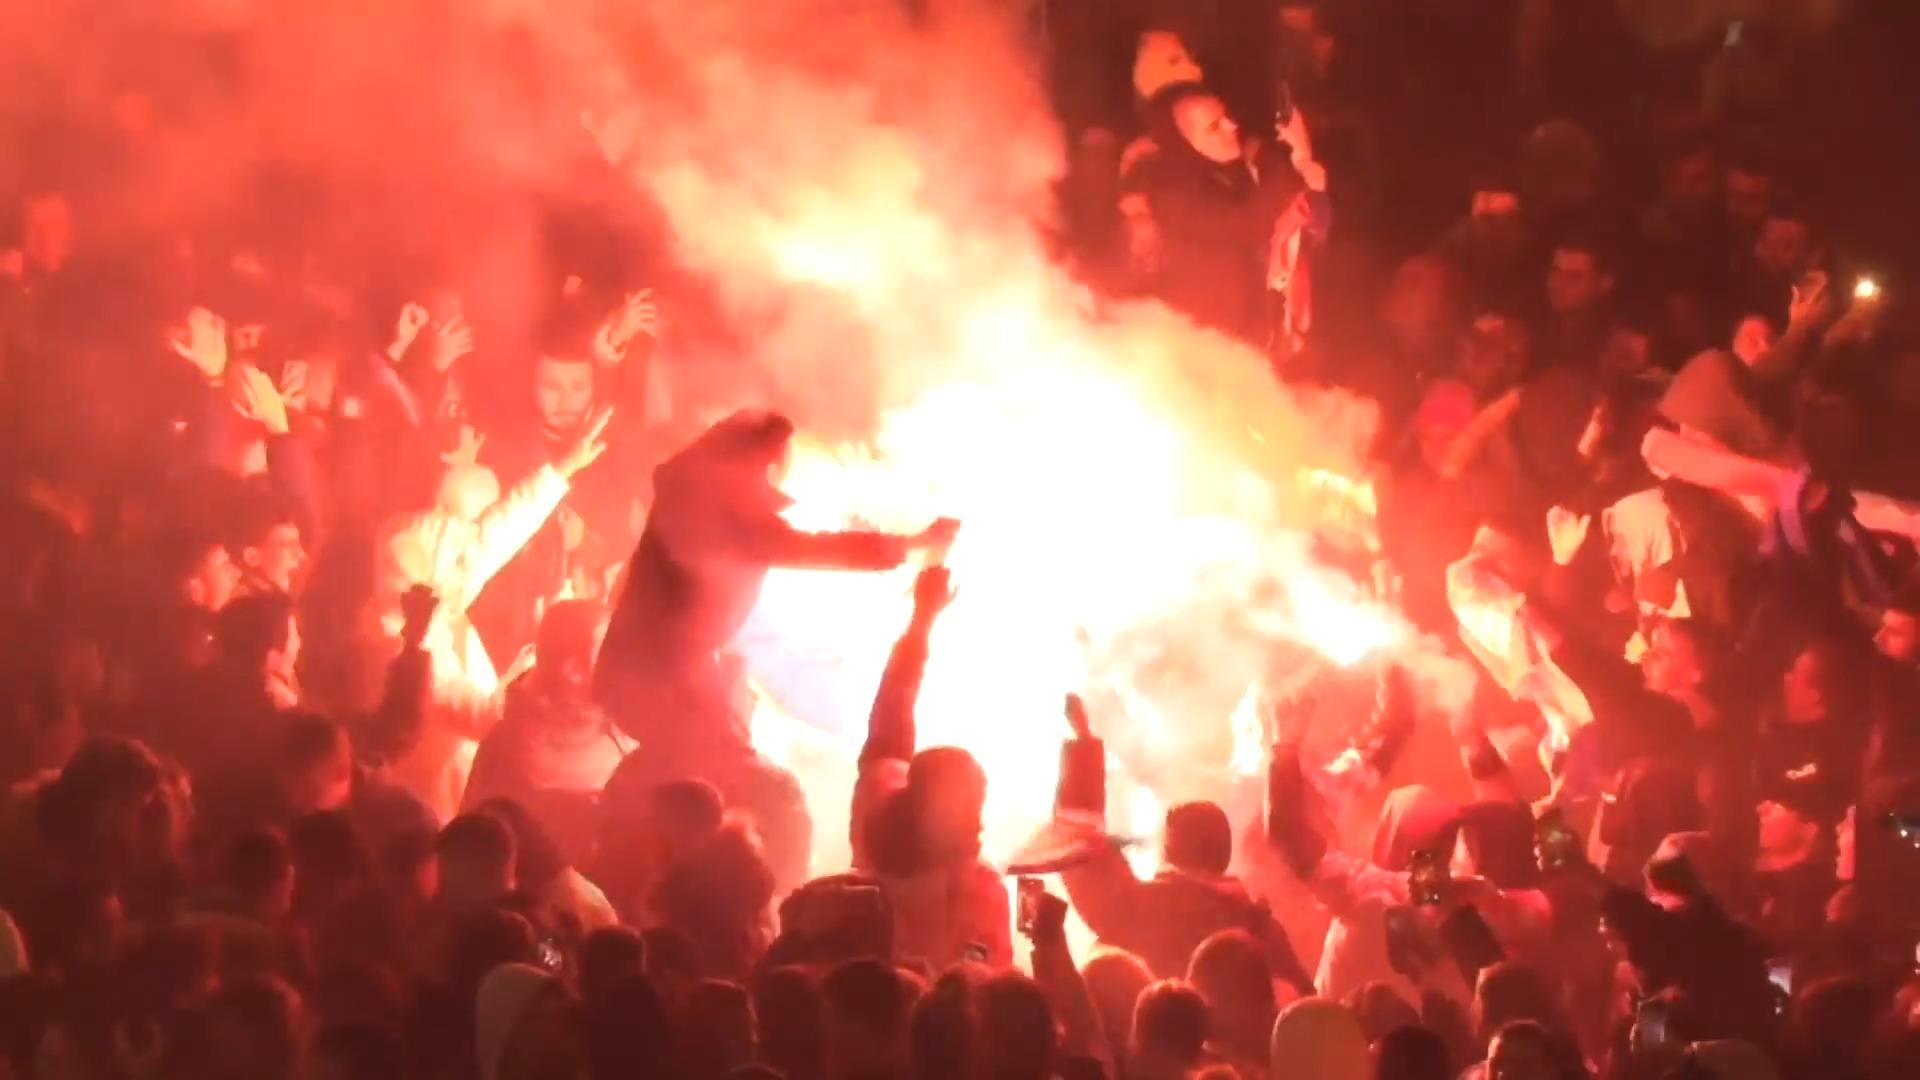 Zagreb "on fire" - Kroatien feiert Platz 3 bei WM Sieg gegen Marokko in Katar